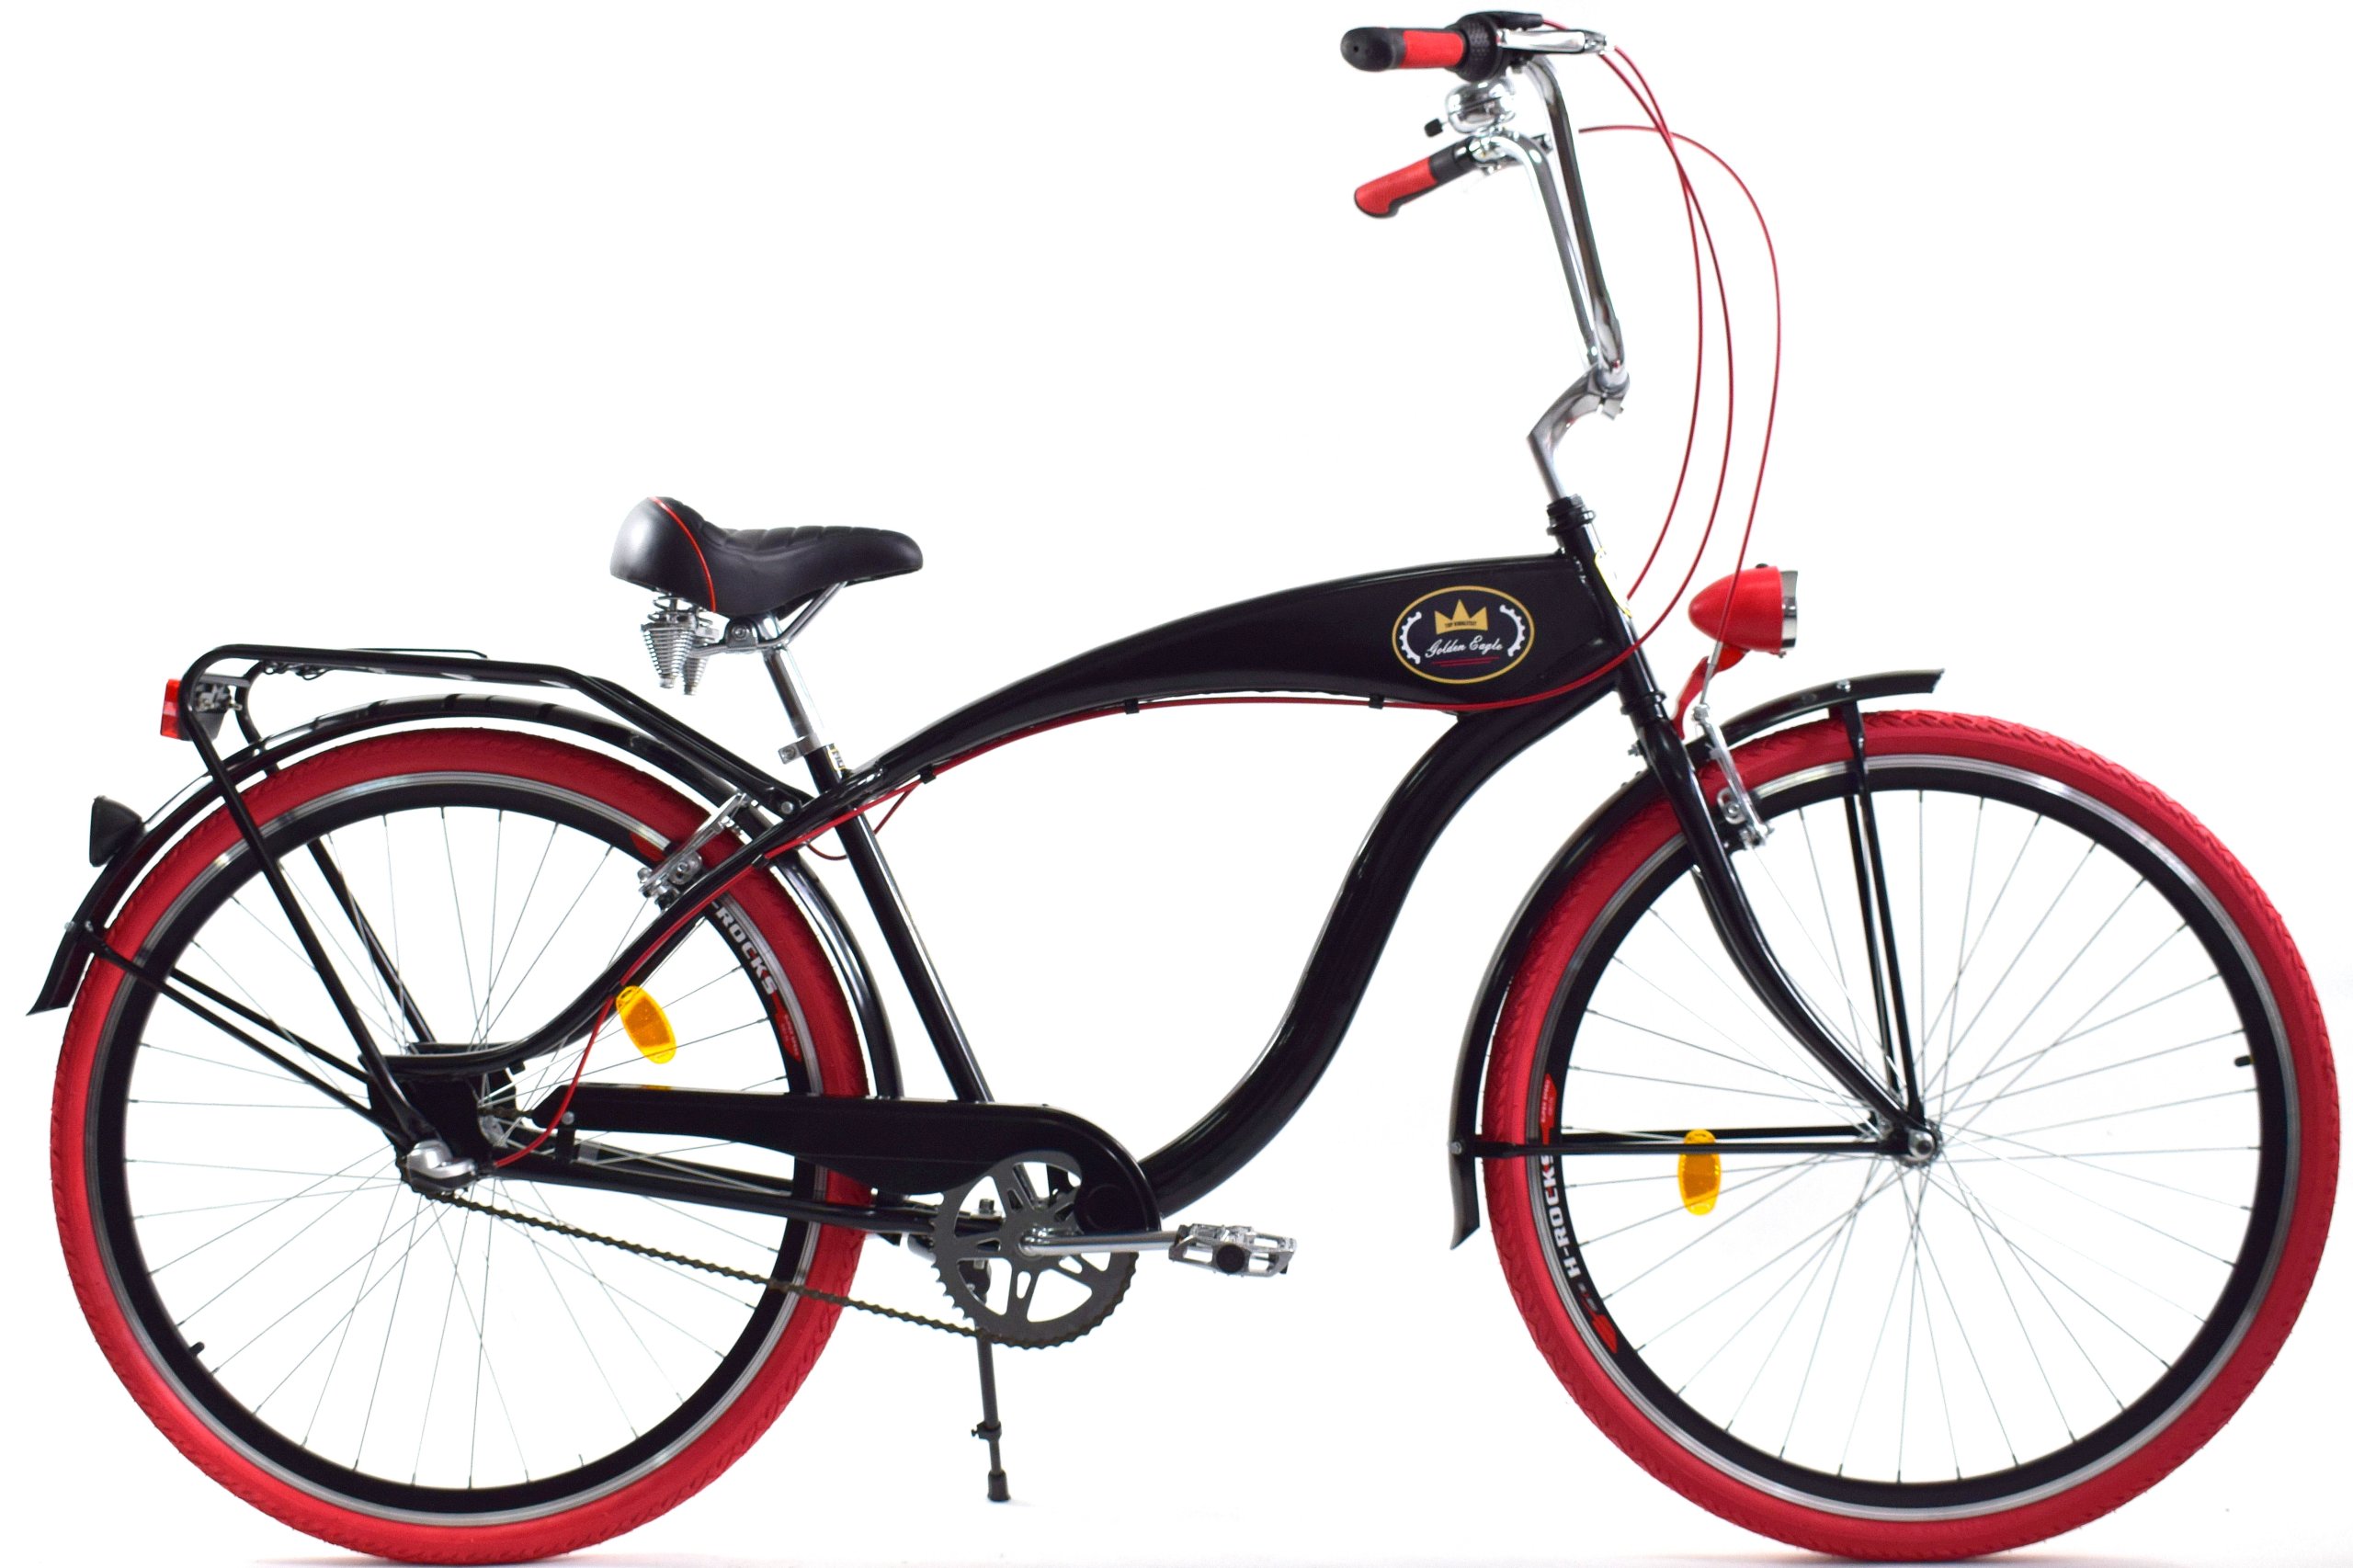 Велосипед мужской взрослый городской. Городской велосипед Romet moderne 3. Даллас 28 городской велосипед 6 передач. Вел круизер стелс. Велосипед взрослый мужской.